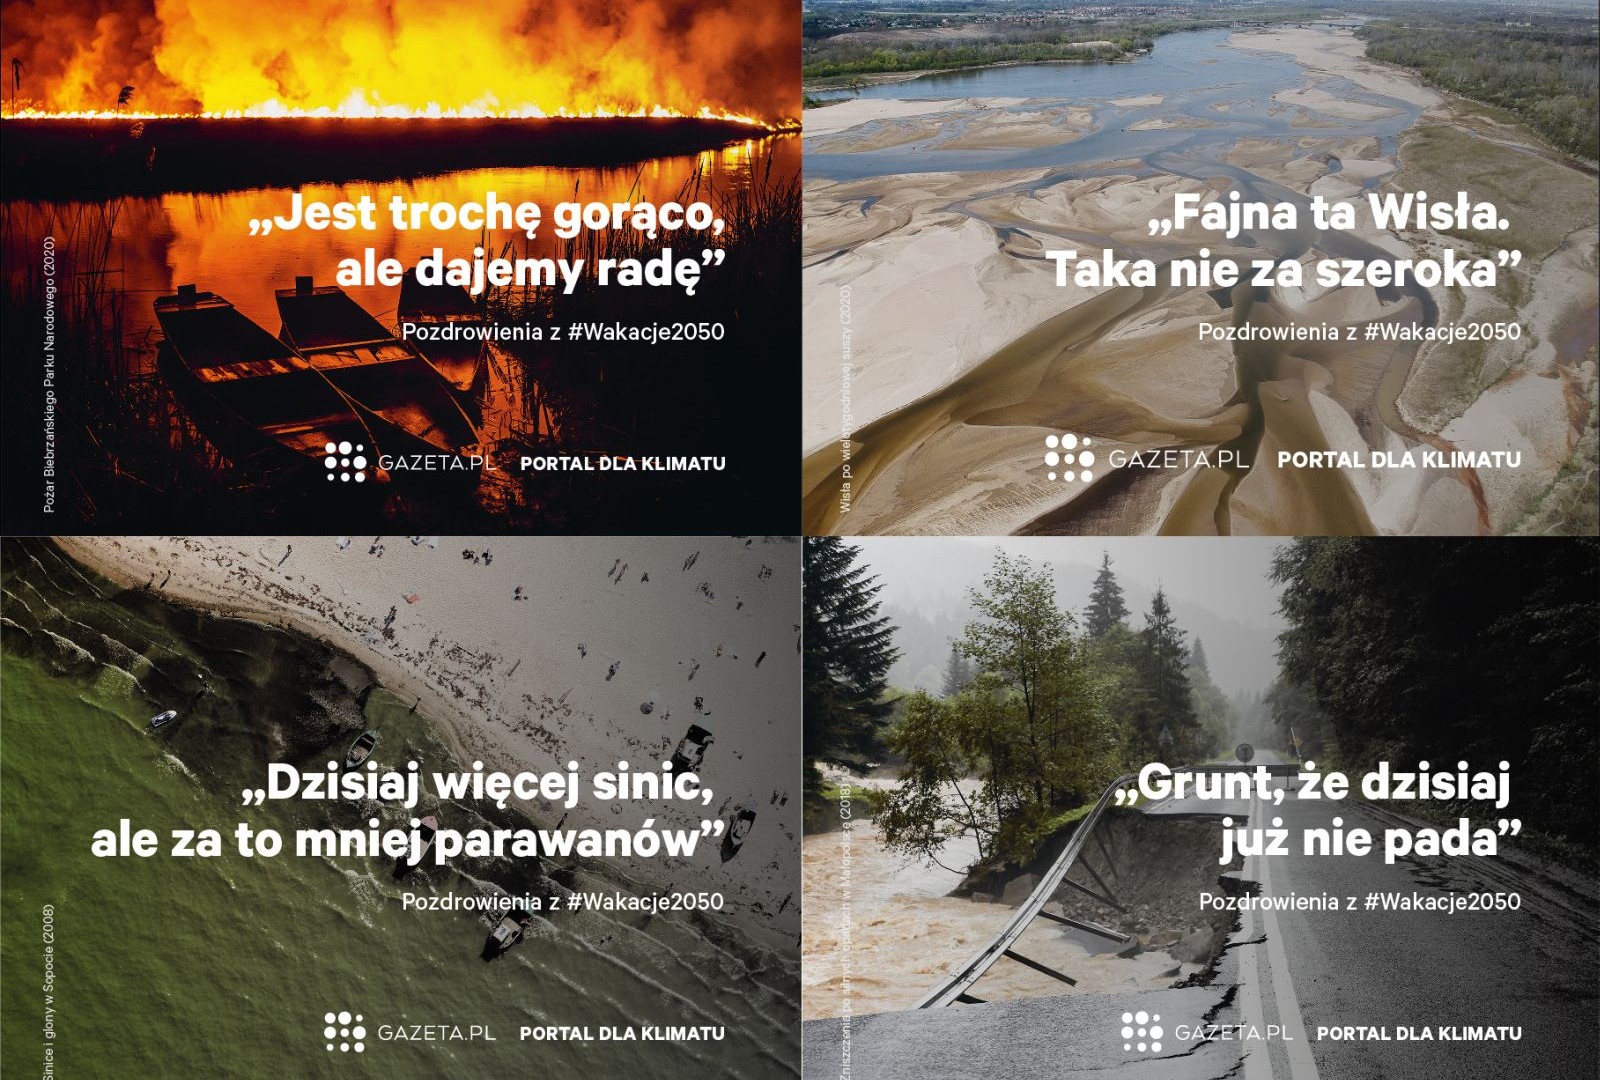 „#Wakacje2050” - Gazeta.pl pozdrawia z przyszłości naznaczonej zmianami klimatu